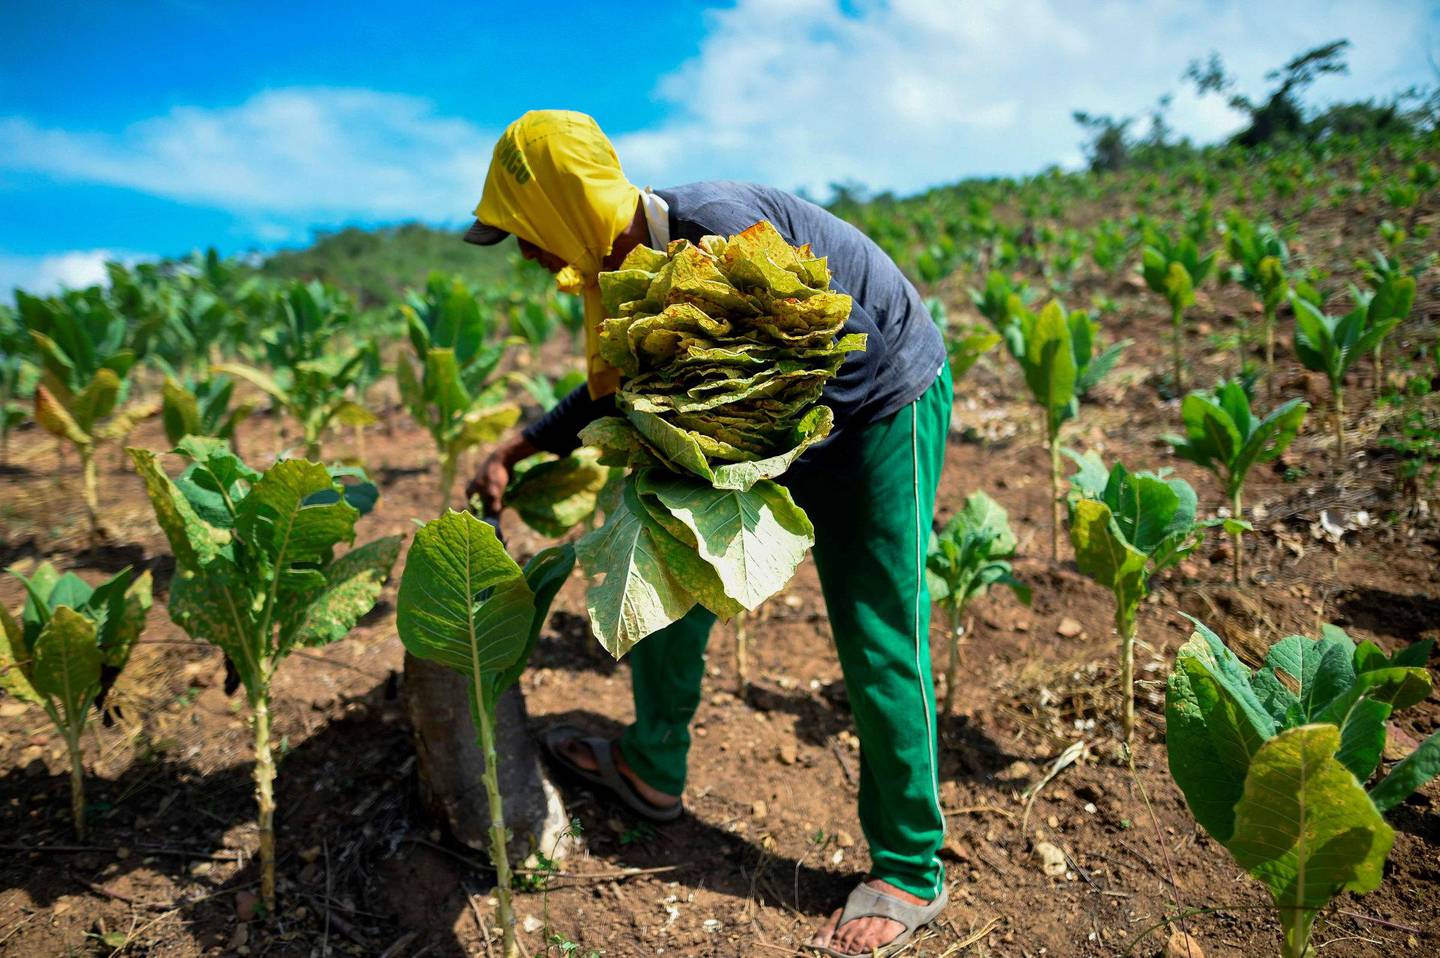 Tobakksblader samles inn i Colombia. Tobakk bidrar til sykdom og dødsfall, særlig i lavinntektsland. Foto: NTB scanpix